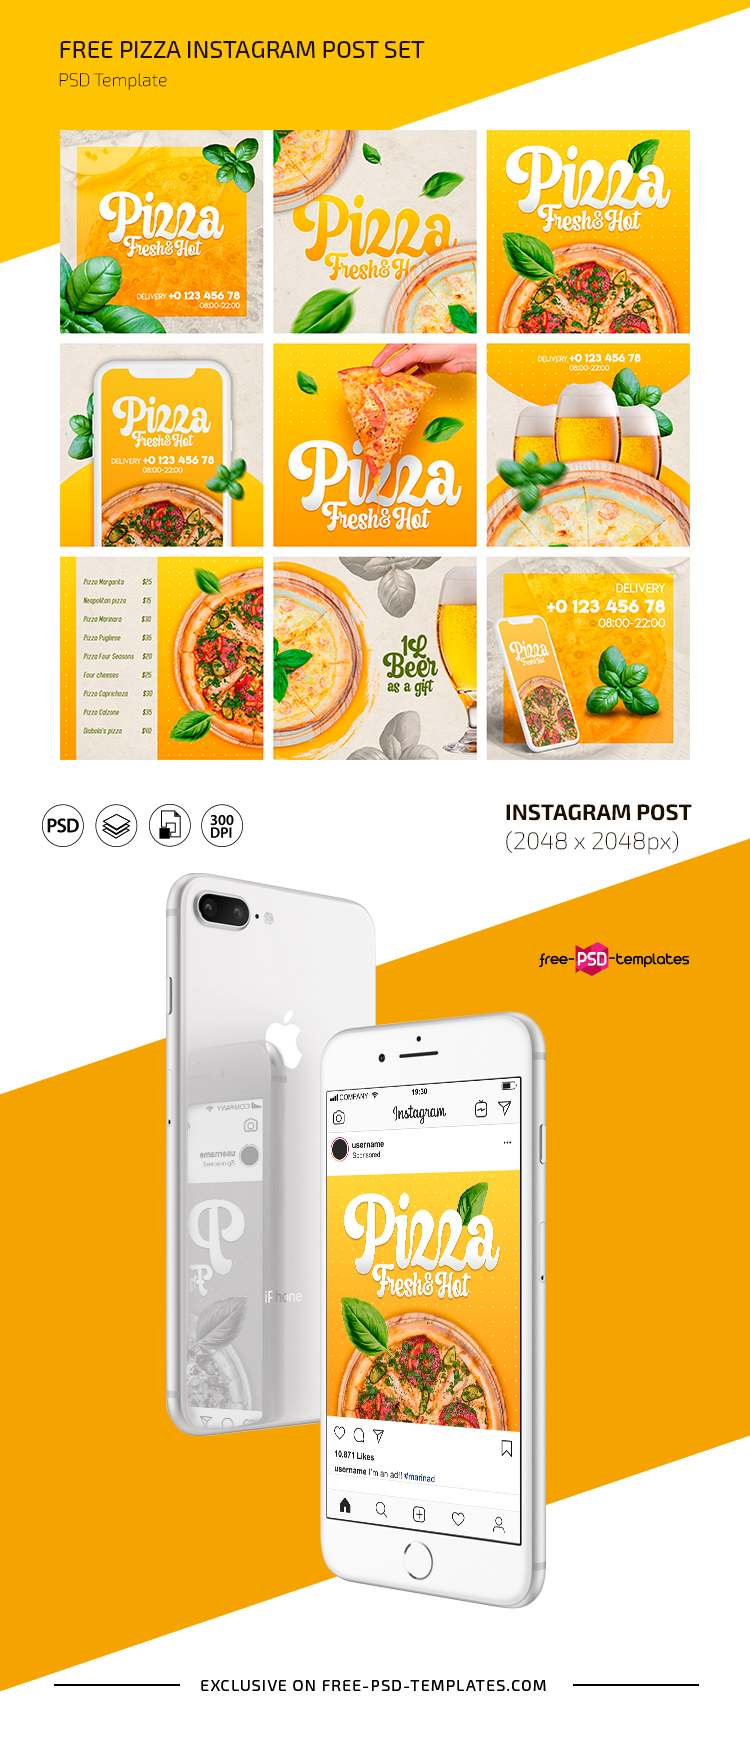 免费披萨Instagram帖子设置在PSD